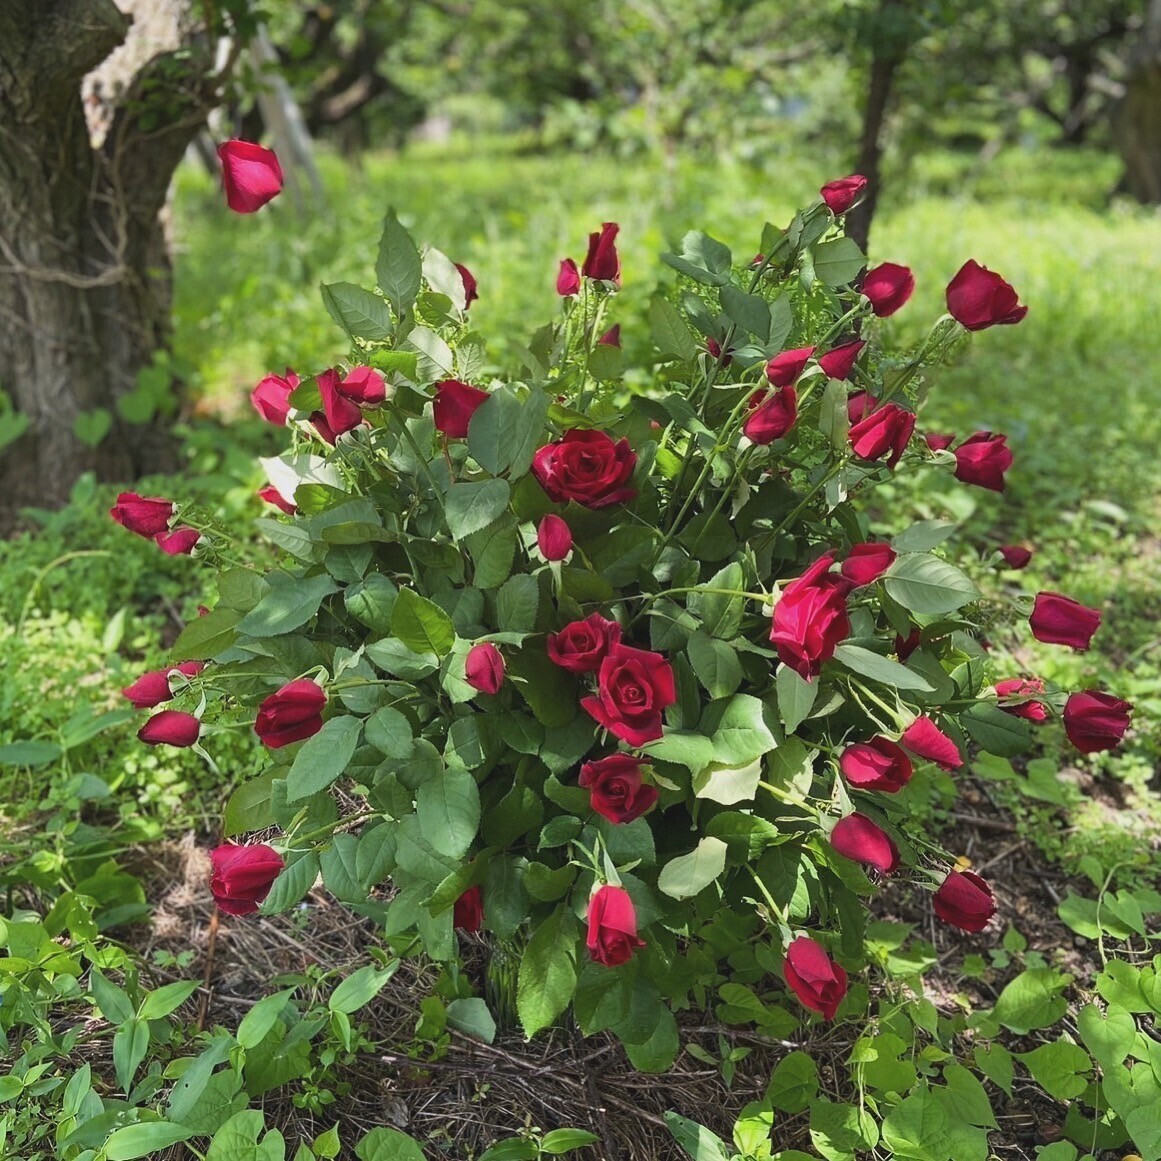 ローズギャラリーの歴史を語るバラ“Vintage Rose”に出逢う期間限定キャンペーン開催　『Une rose à rencontre』ウネ ロザ ランコーント ～ 出逢うべくバラ～